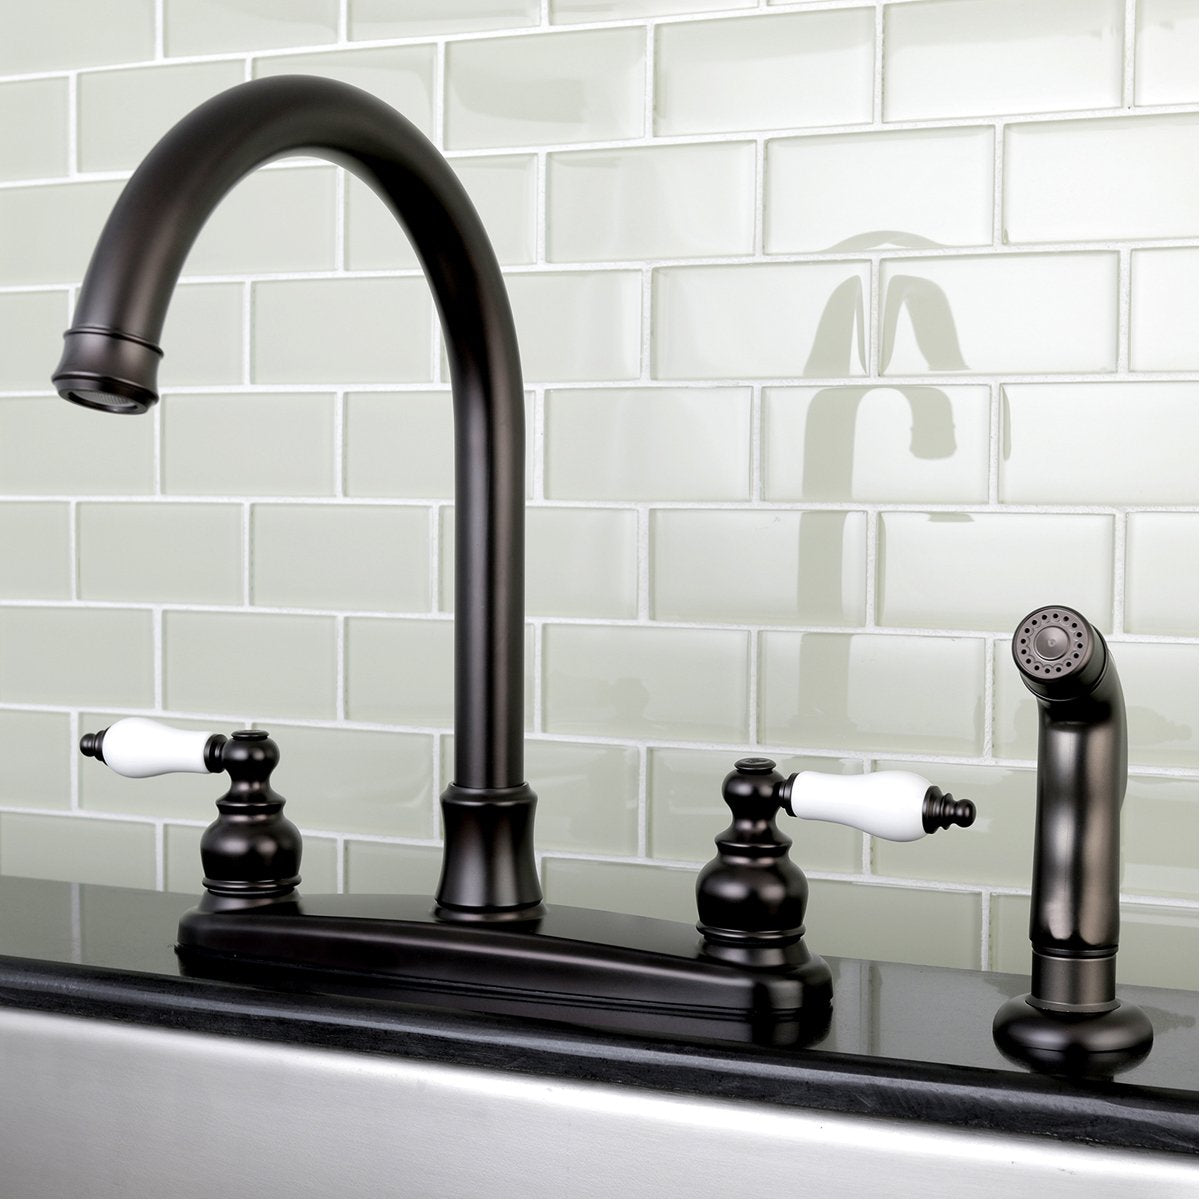 Kingston Brass Victorian Centerset Deck Mount Kitchen Faucet-DirectSinks